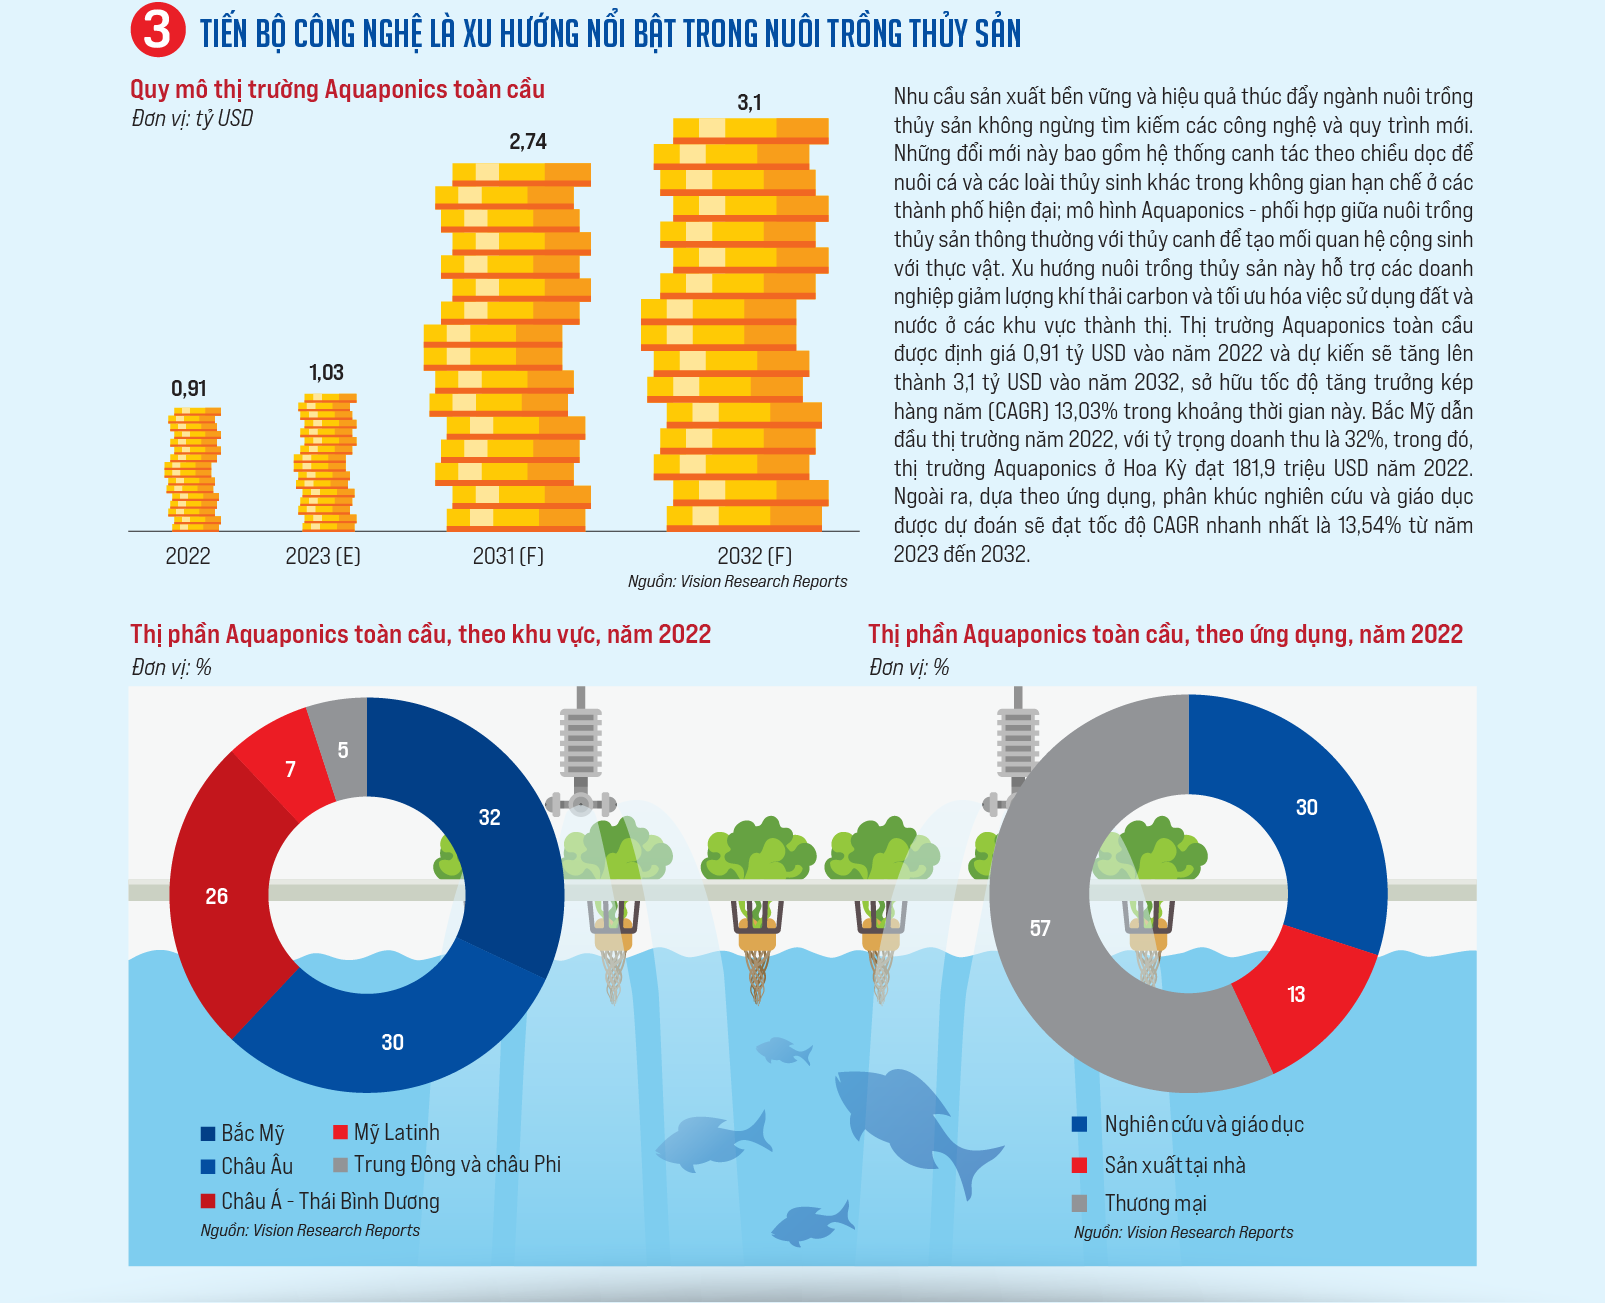 Nuôi trồng thủy sản bền vững: Tương lai của kinh tế biển  - Ảnh 4